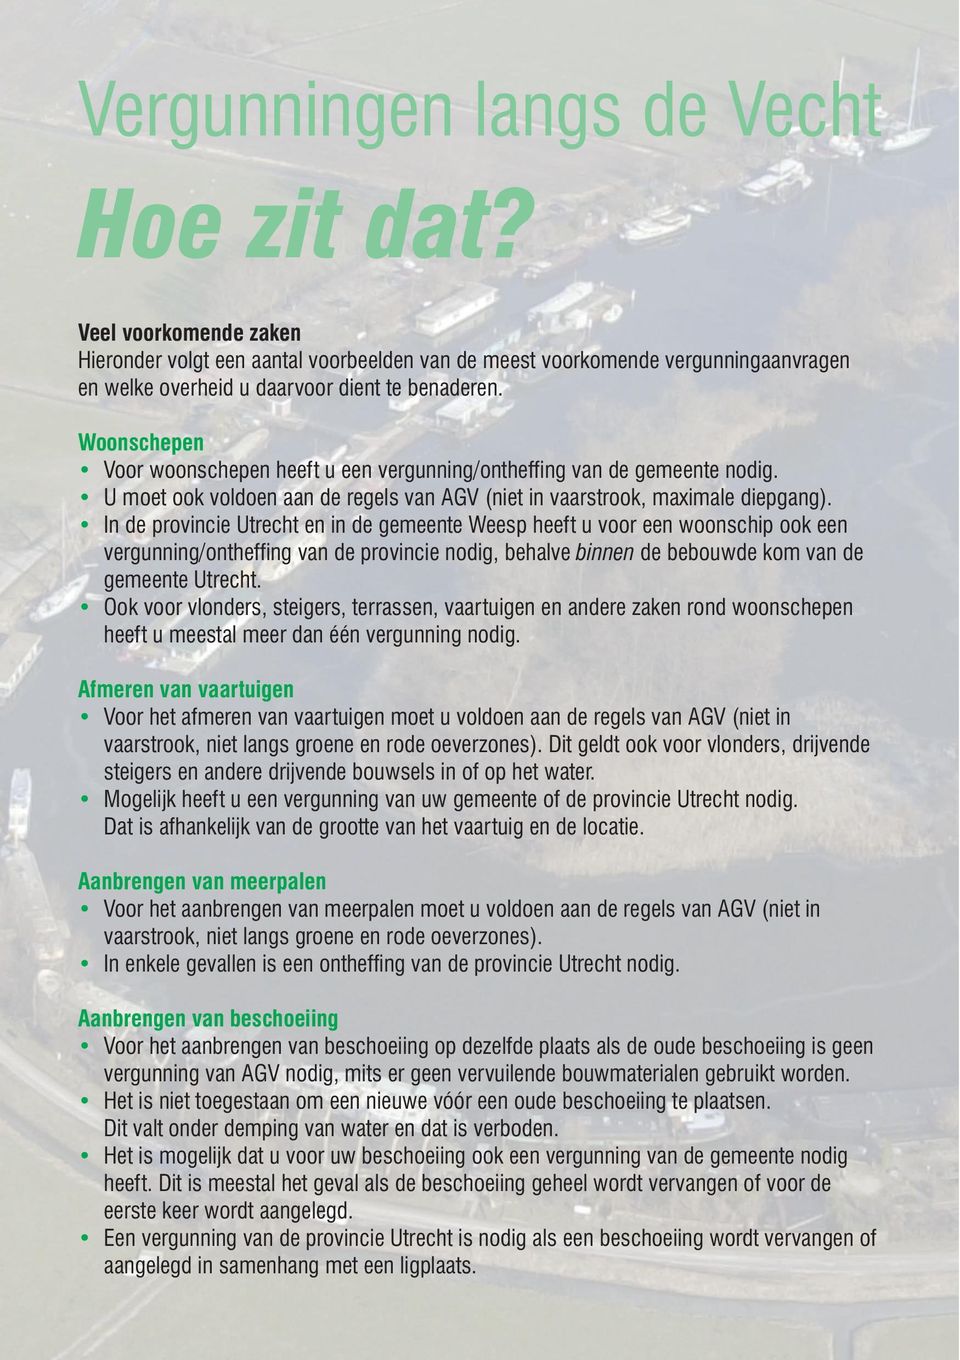 In de provincie Utrecht en in de gemeente Weesp heeft u voor een woonschip ook een vergunning/ontheffing van de provincie nodig, behalve binnen de bebouwde kom van de gemeente Utrecht.